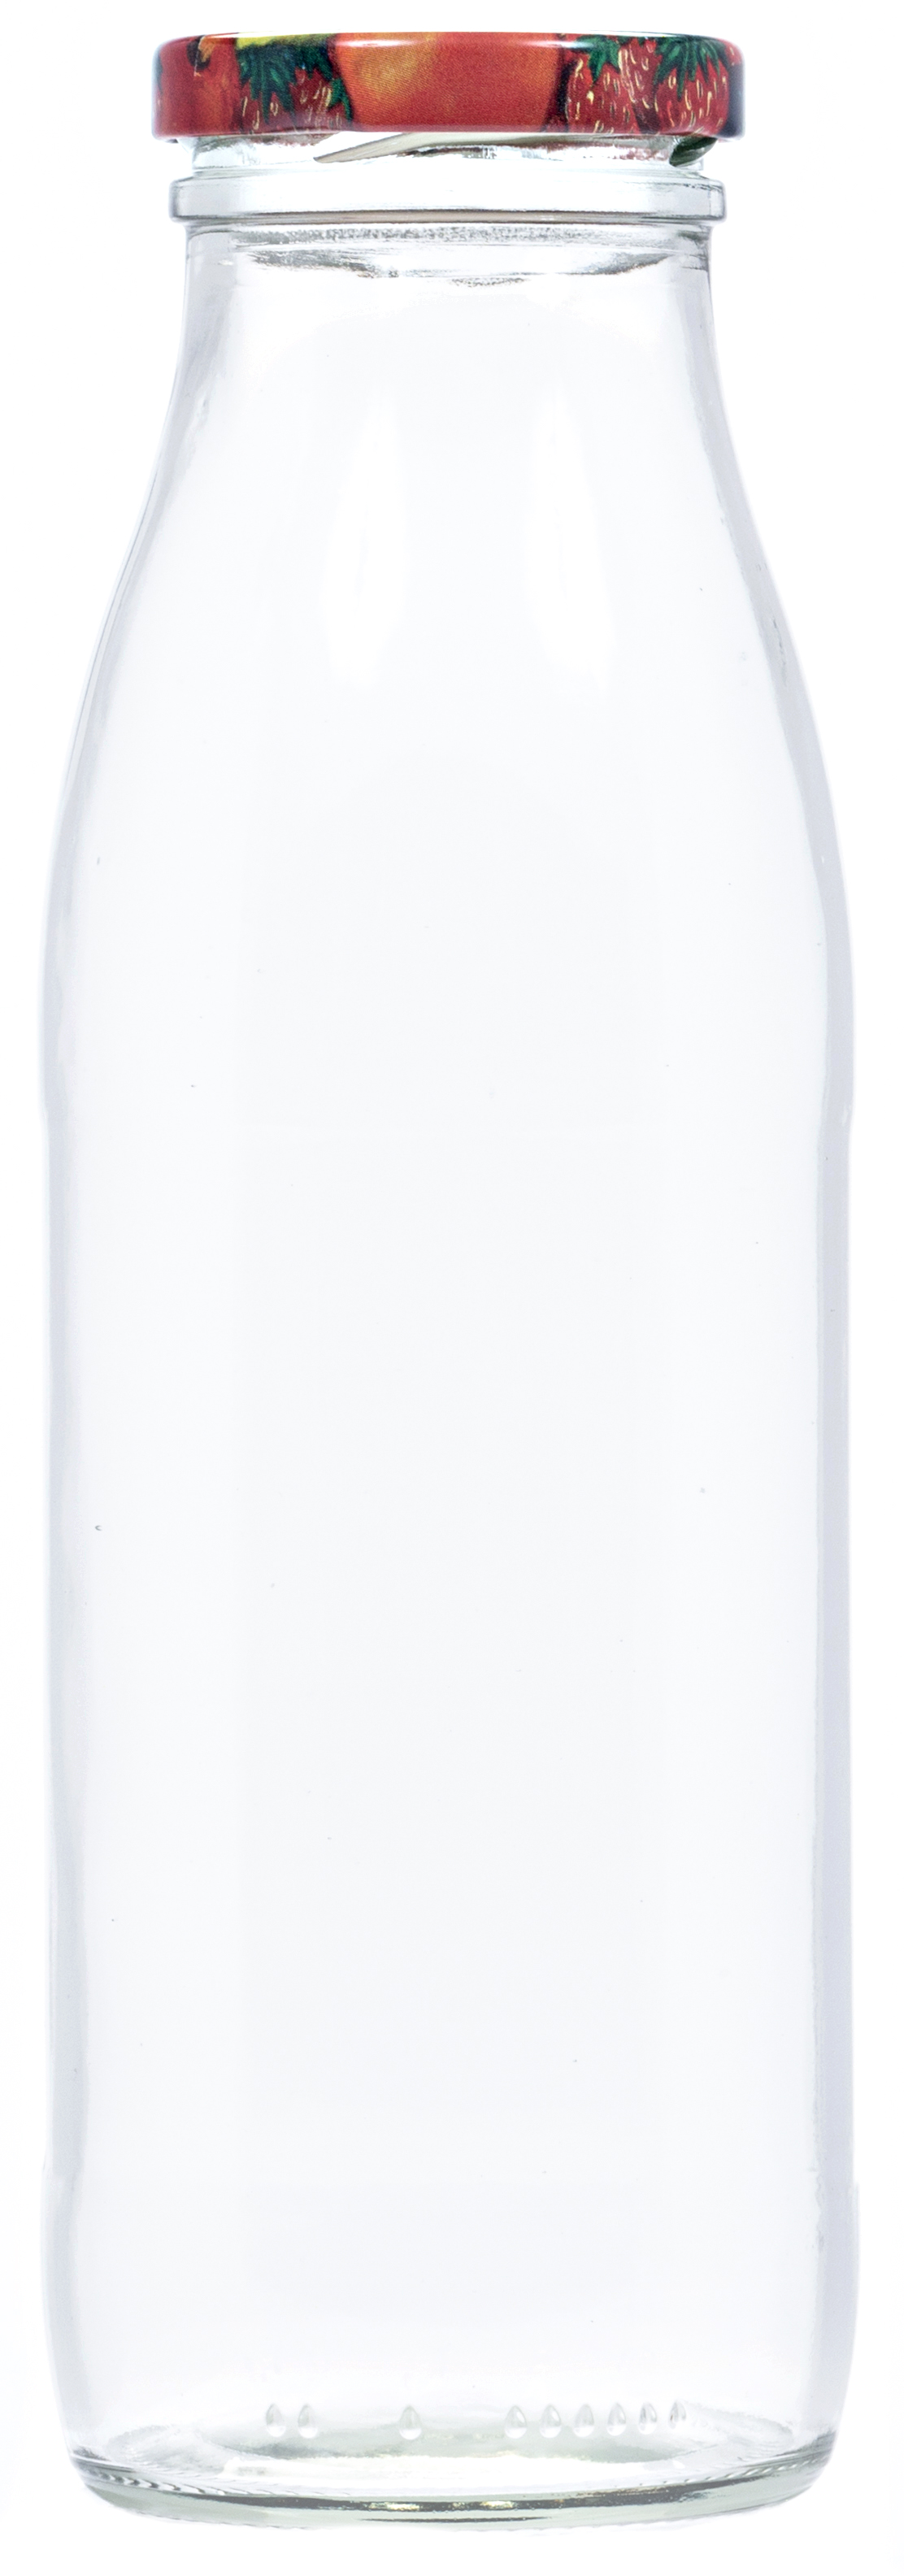 Saftflasche mit Deckel 0,5 Liter 6 Stück